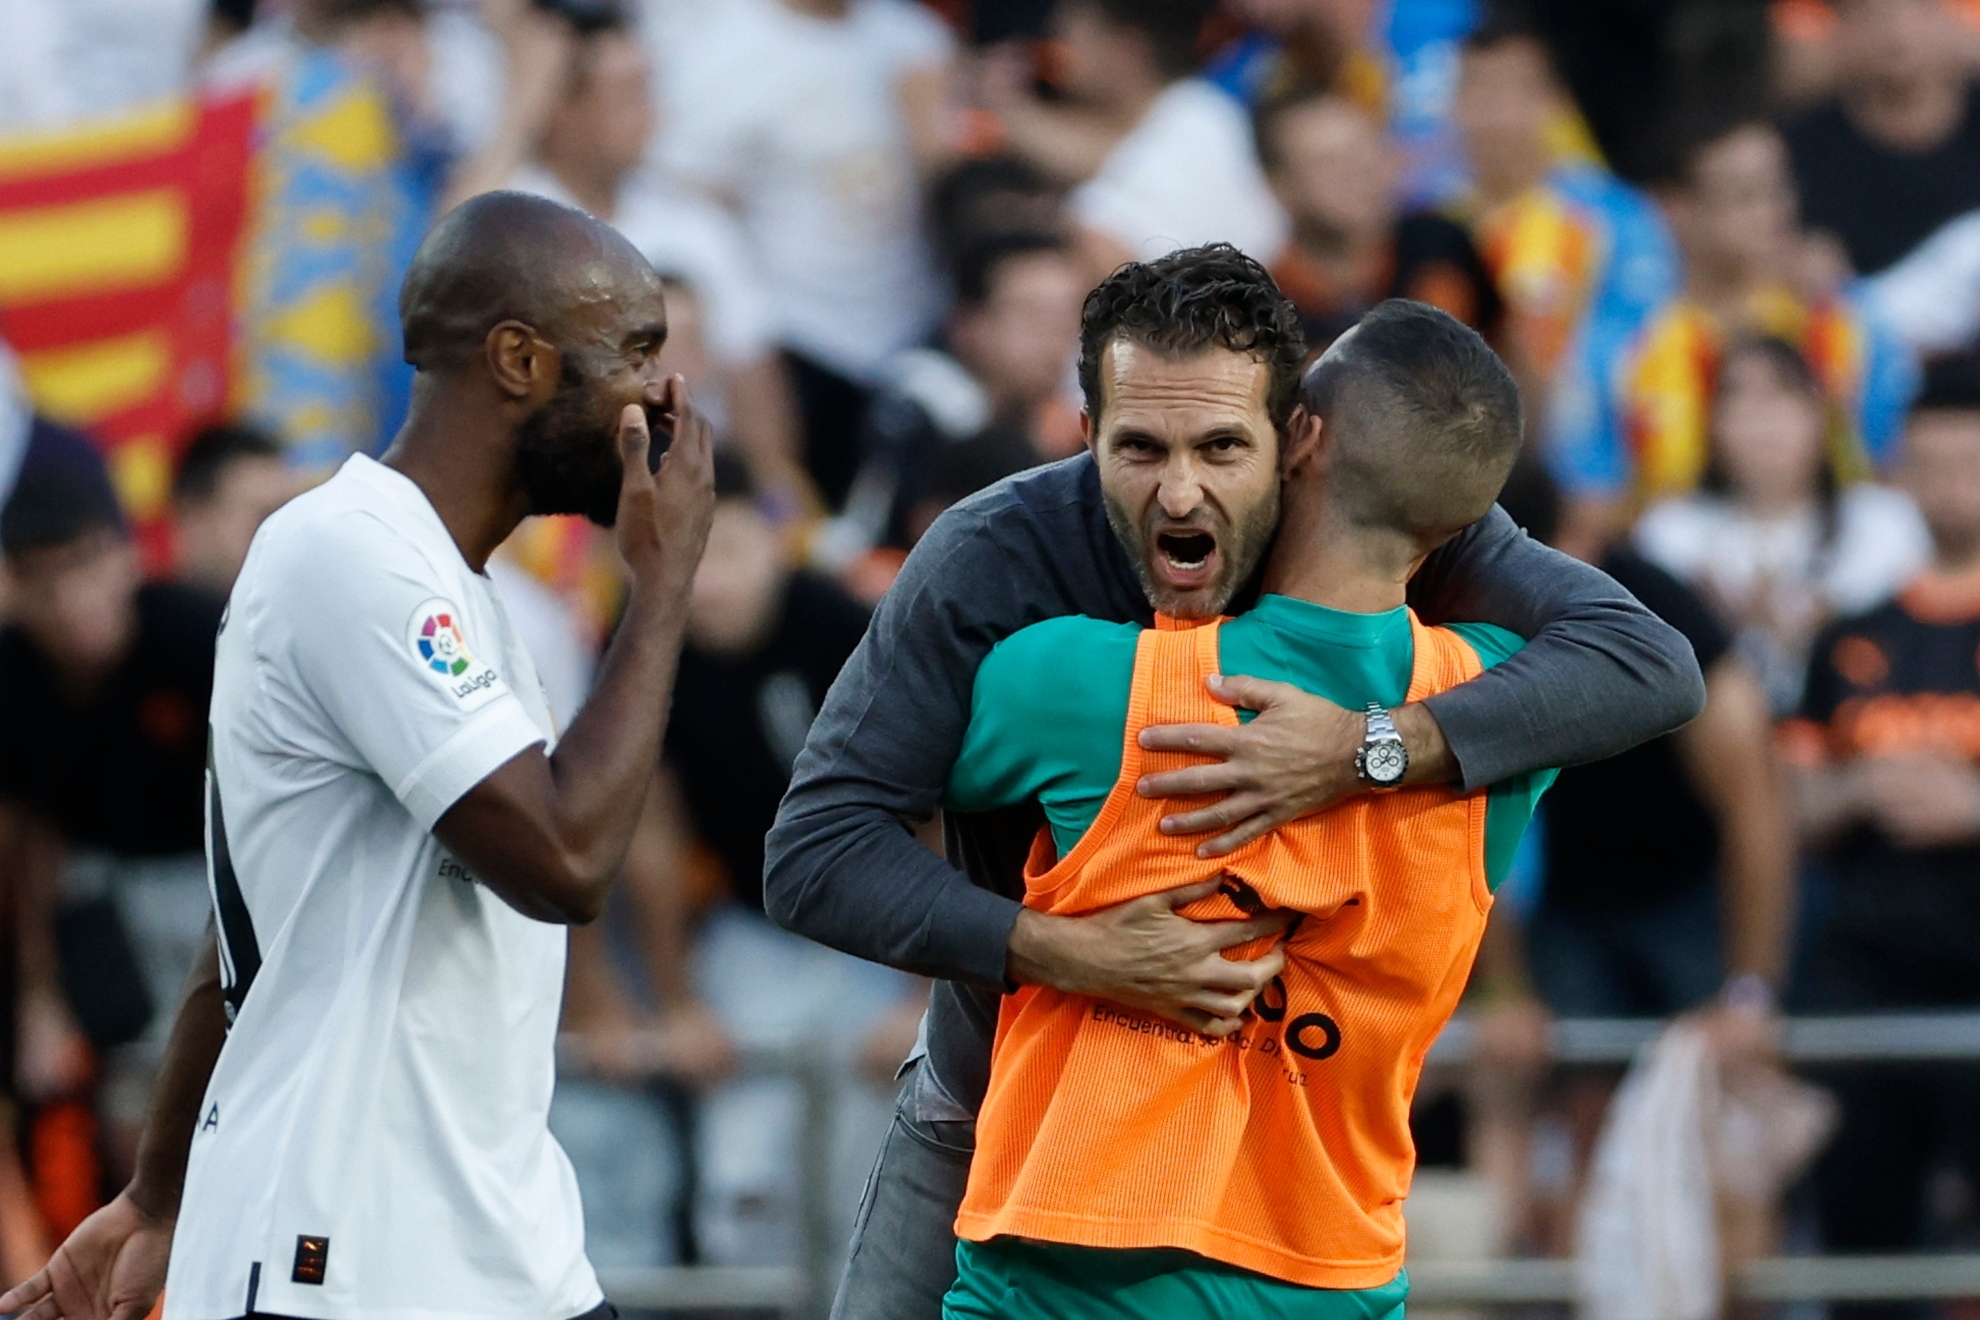 Baraja se abraza a Jaume en presencia de Foulquier en un partido de esta temporada.